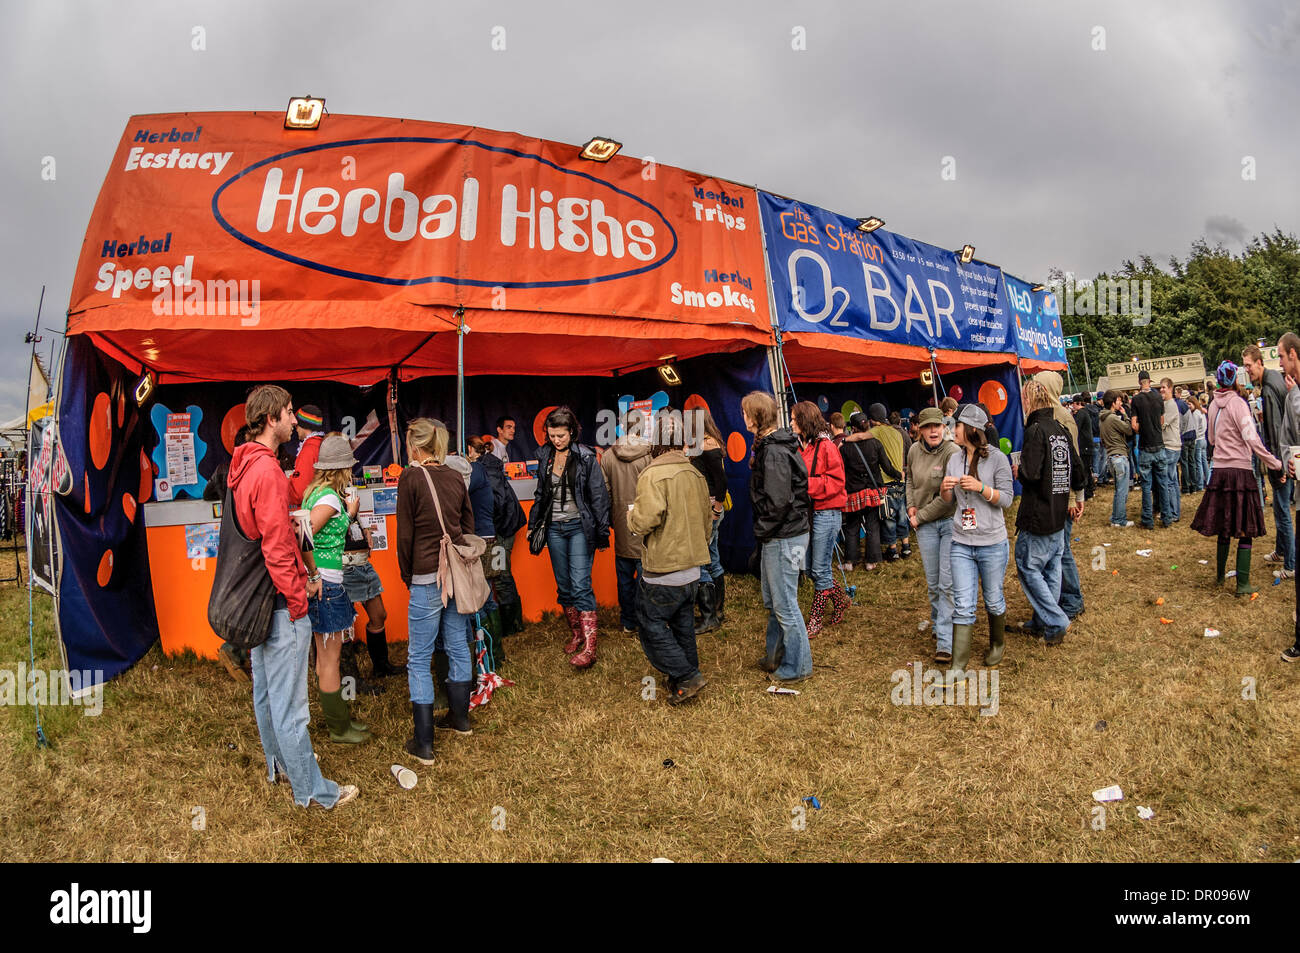 Herbal Highs und Sauerstoff Bar beim Musikfestival Stockfoto